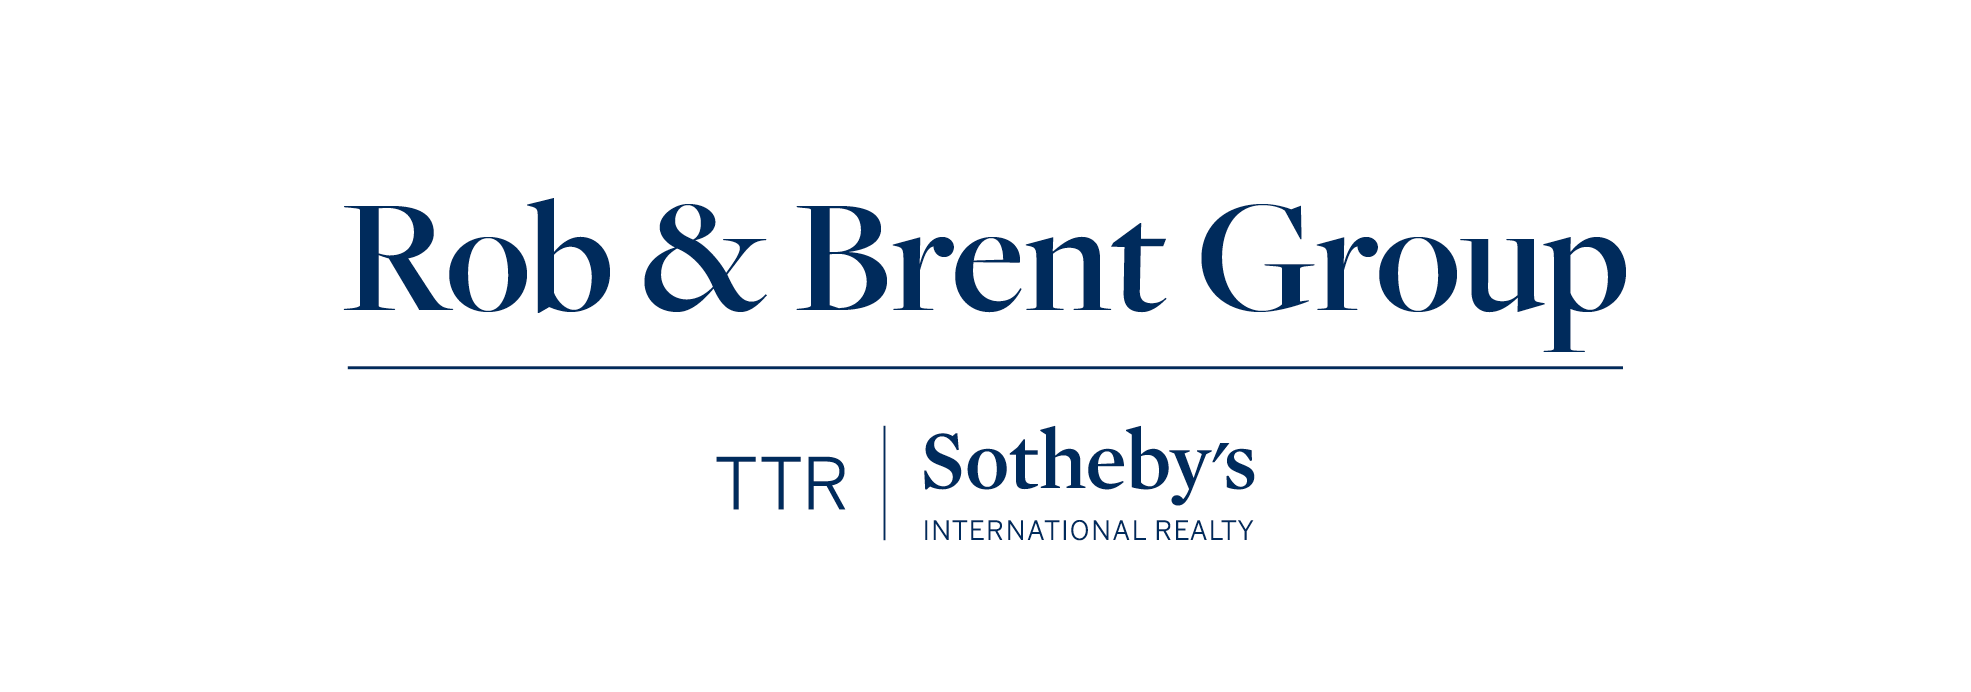 TTR Logo - Rob & Brent Group TTR Sotheby's Logo - 2018 Sip and Savor